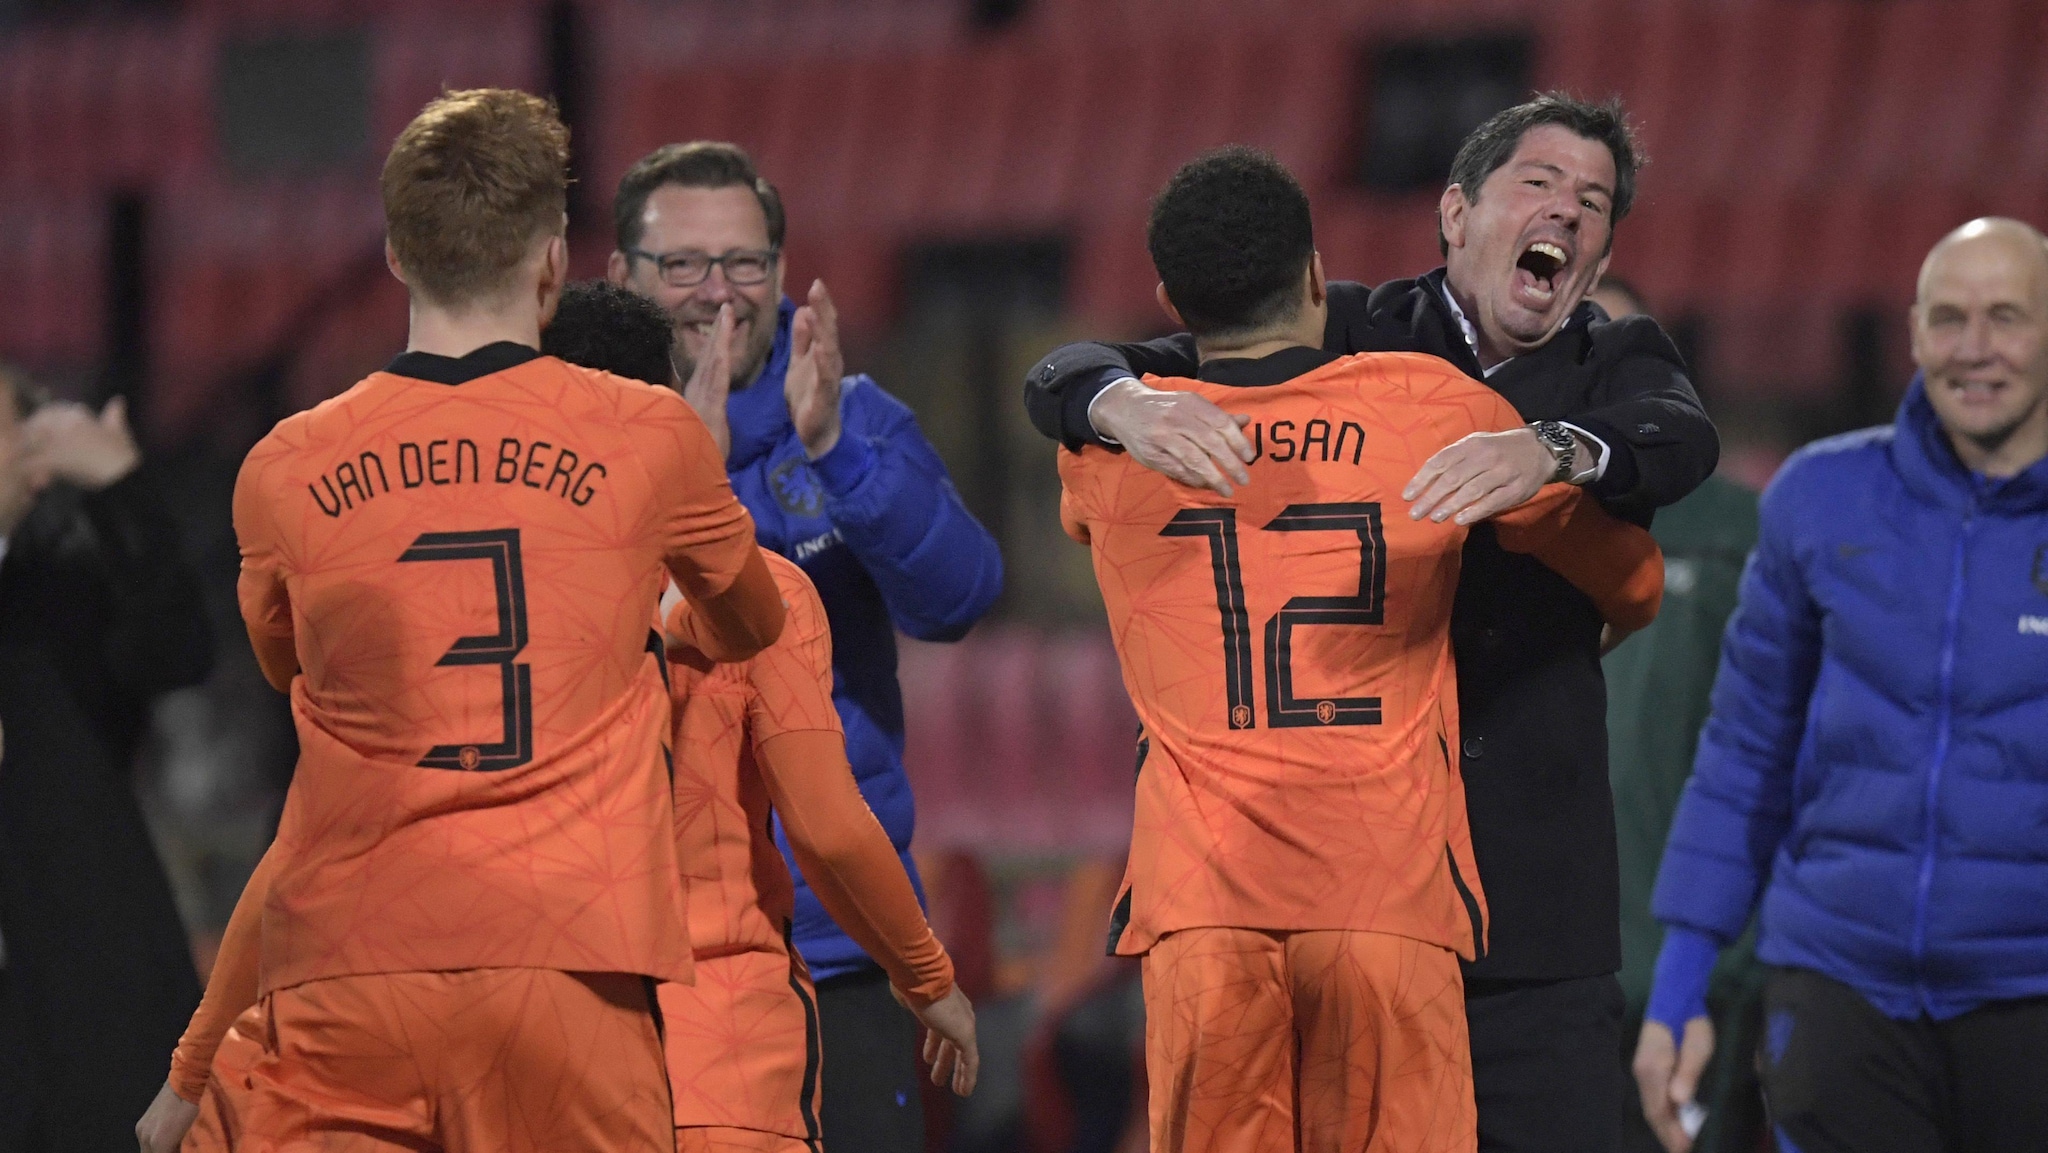 Últimos clasificatorios para la EURO sub-21 de 2023: Holanda, Inglaterra, Alemania, Portugal, España y Bélgica en la fase final